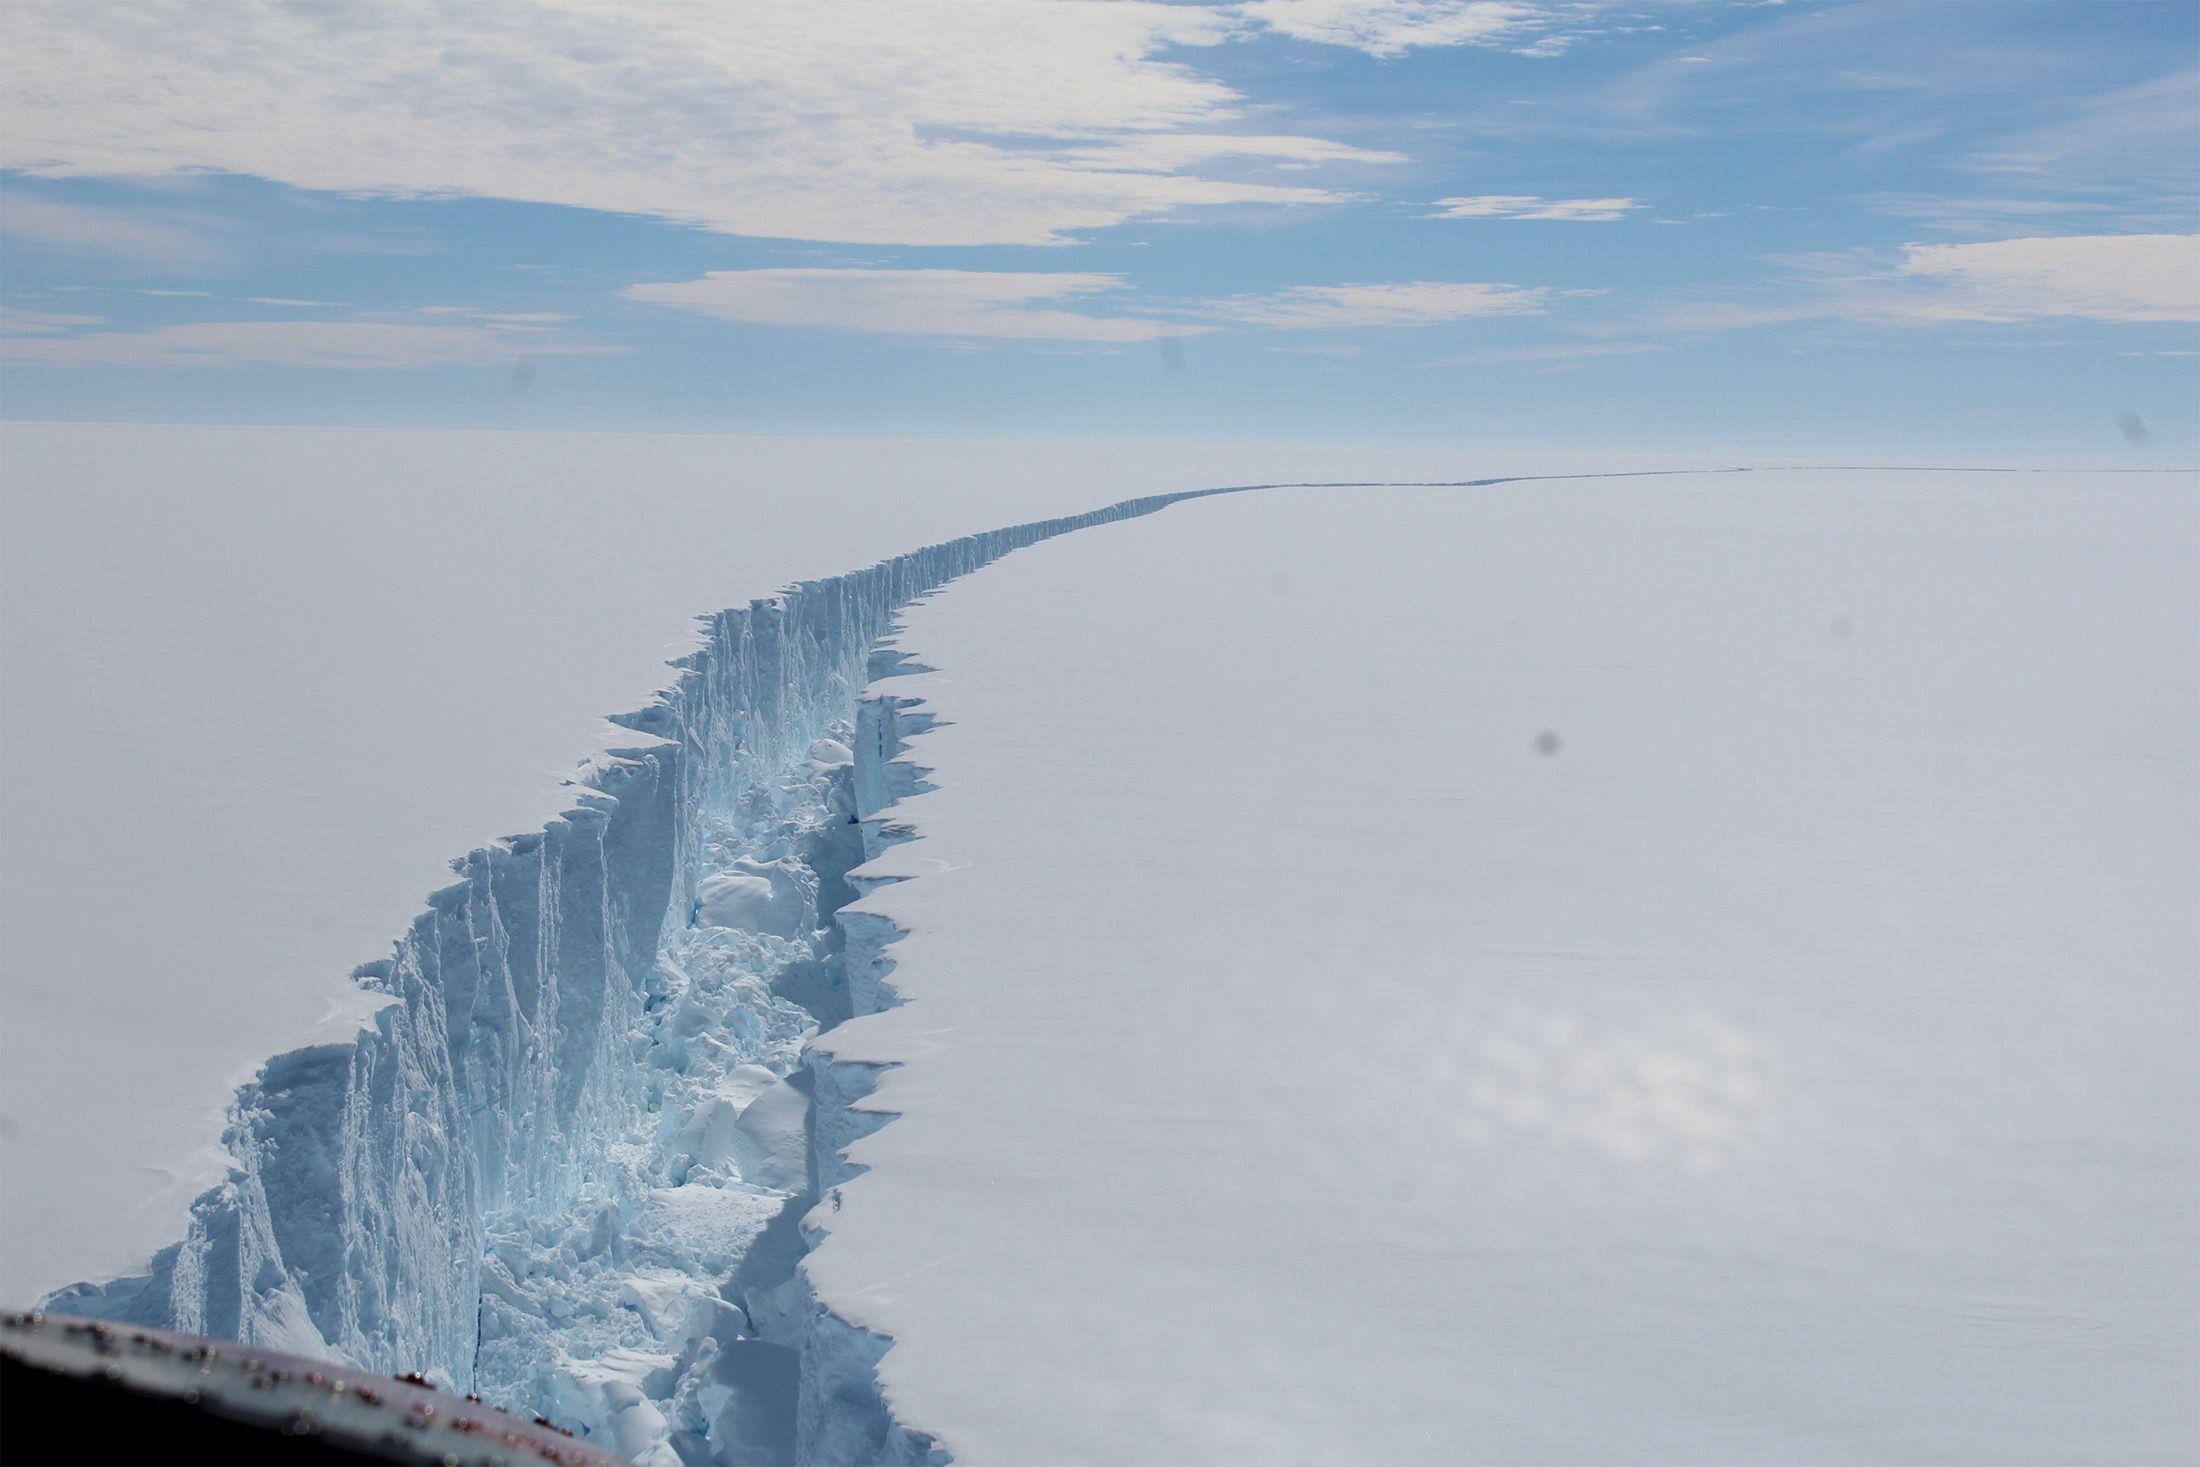 Le détachement de l'iceberg Larsen C, en Antarctique, en août 2017. © BAS